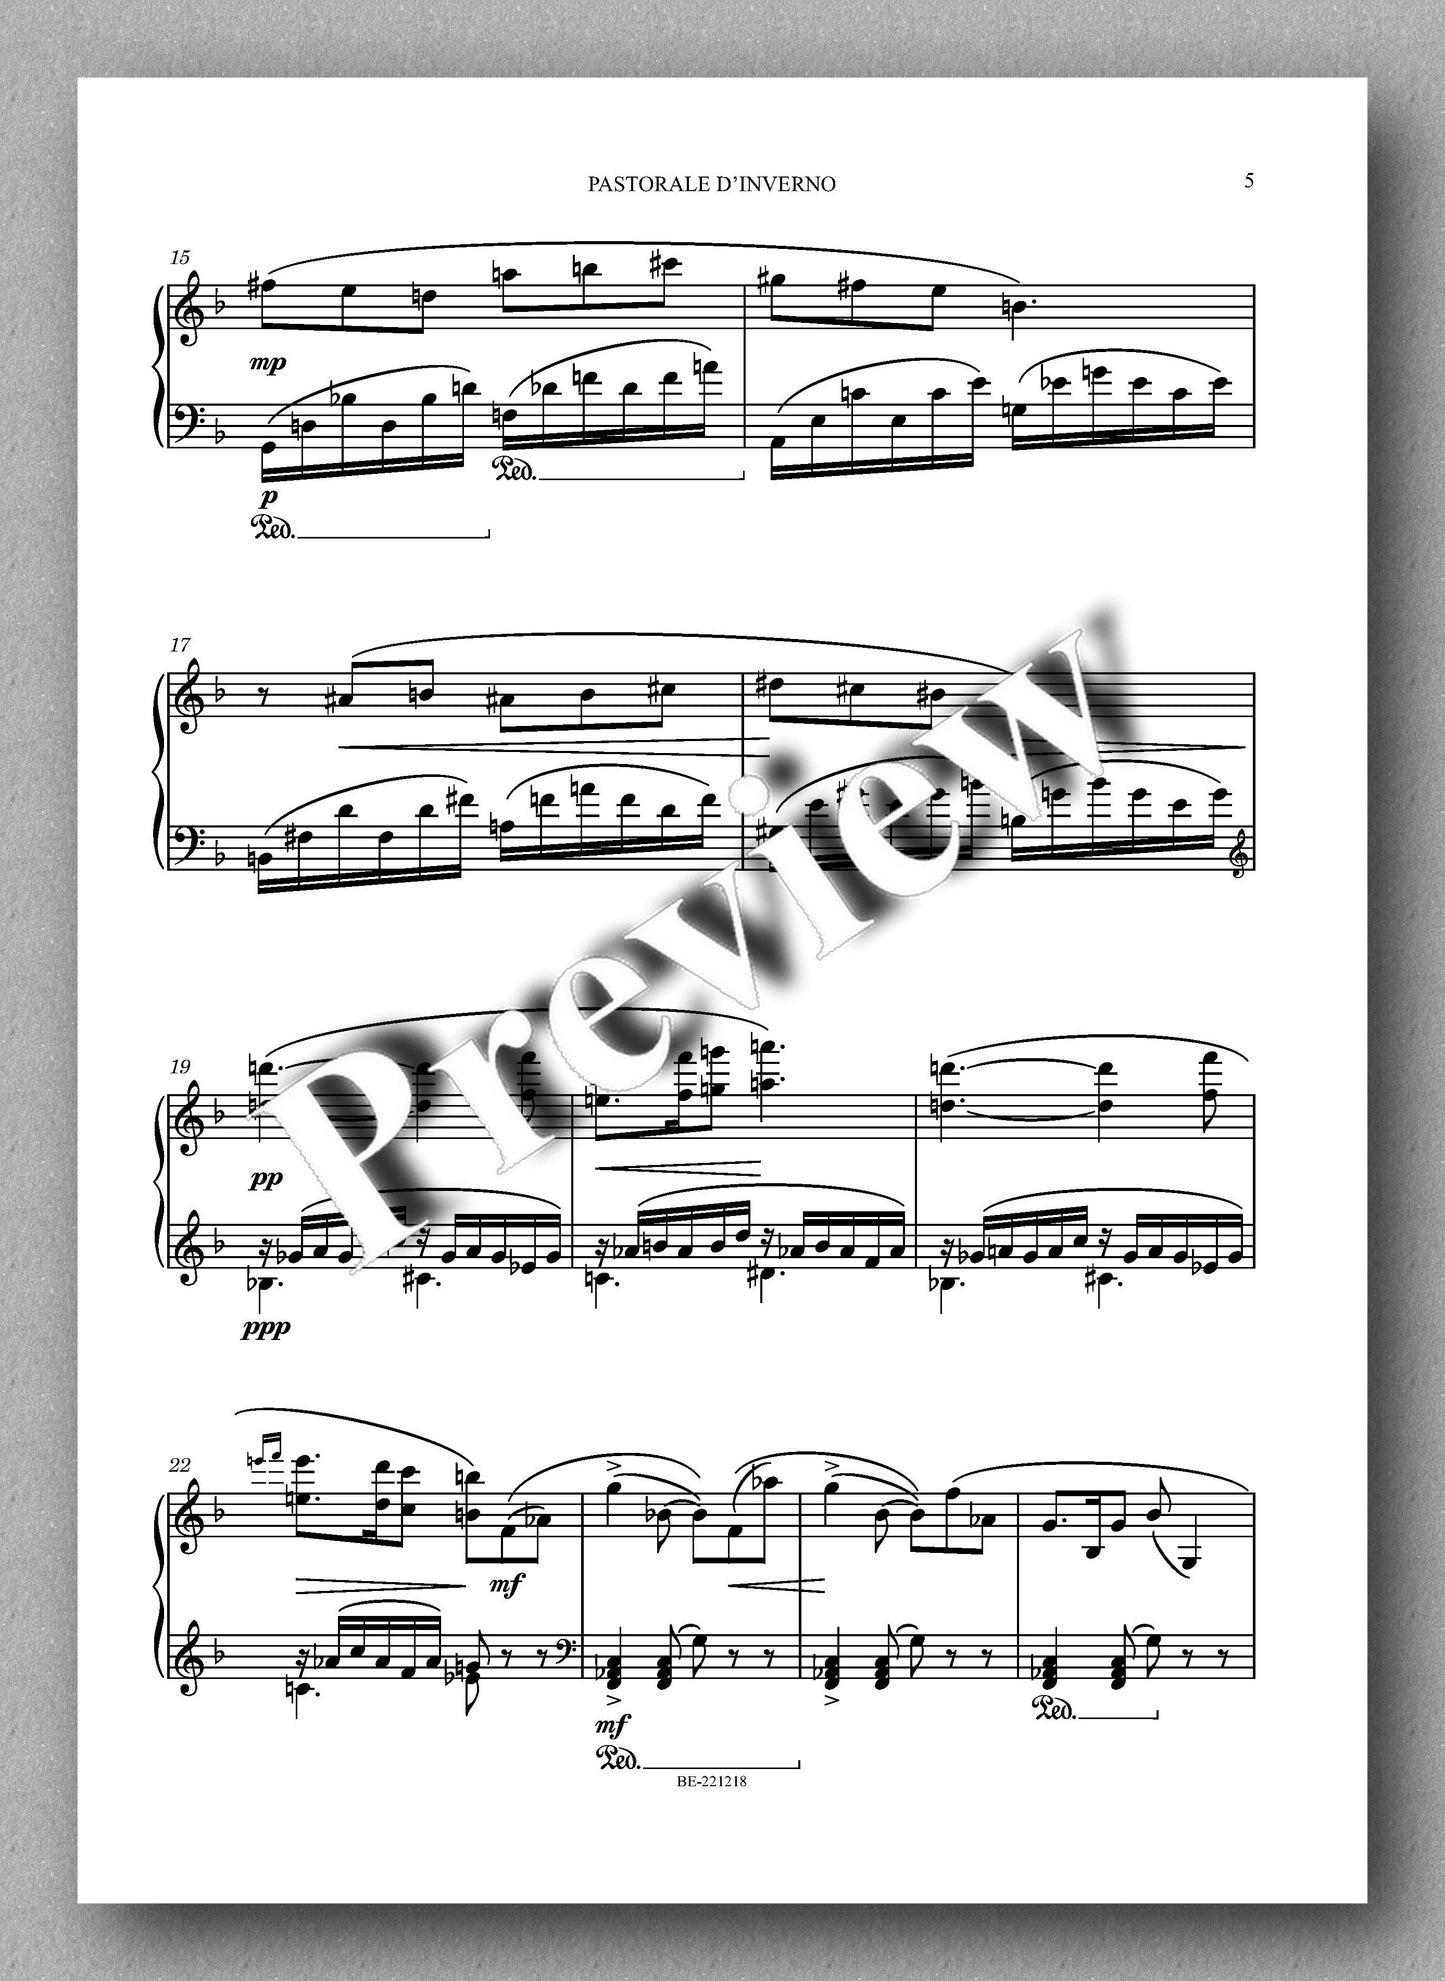 PASTORALE D’INVERNO, op. 442 by  Leonello Capodaglio -  preview of the music score 2